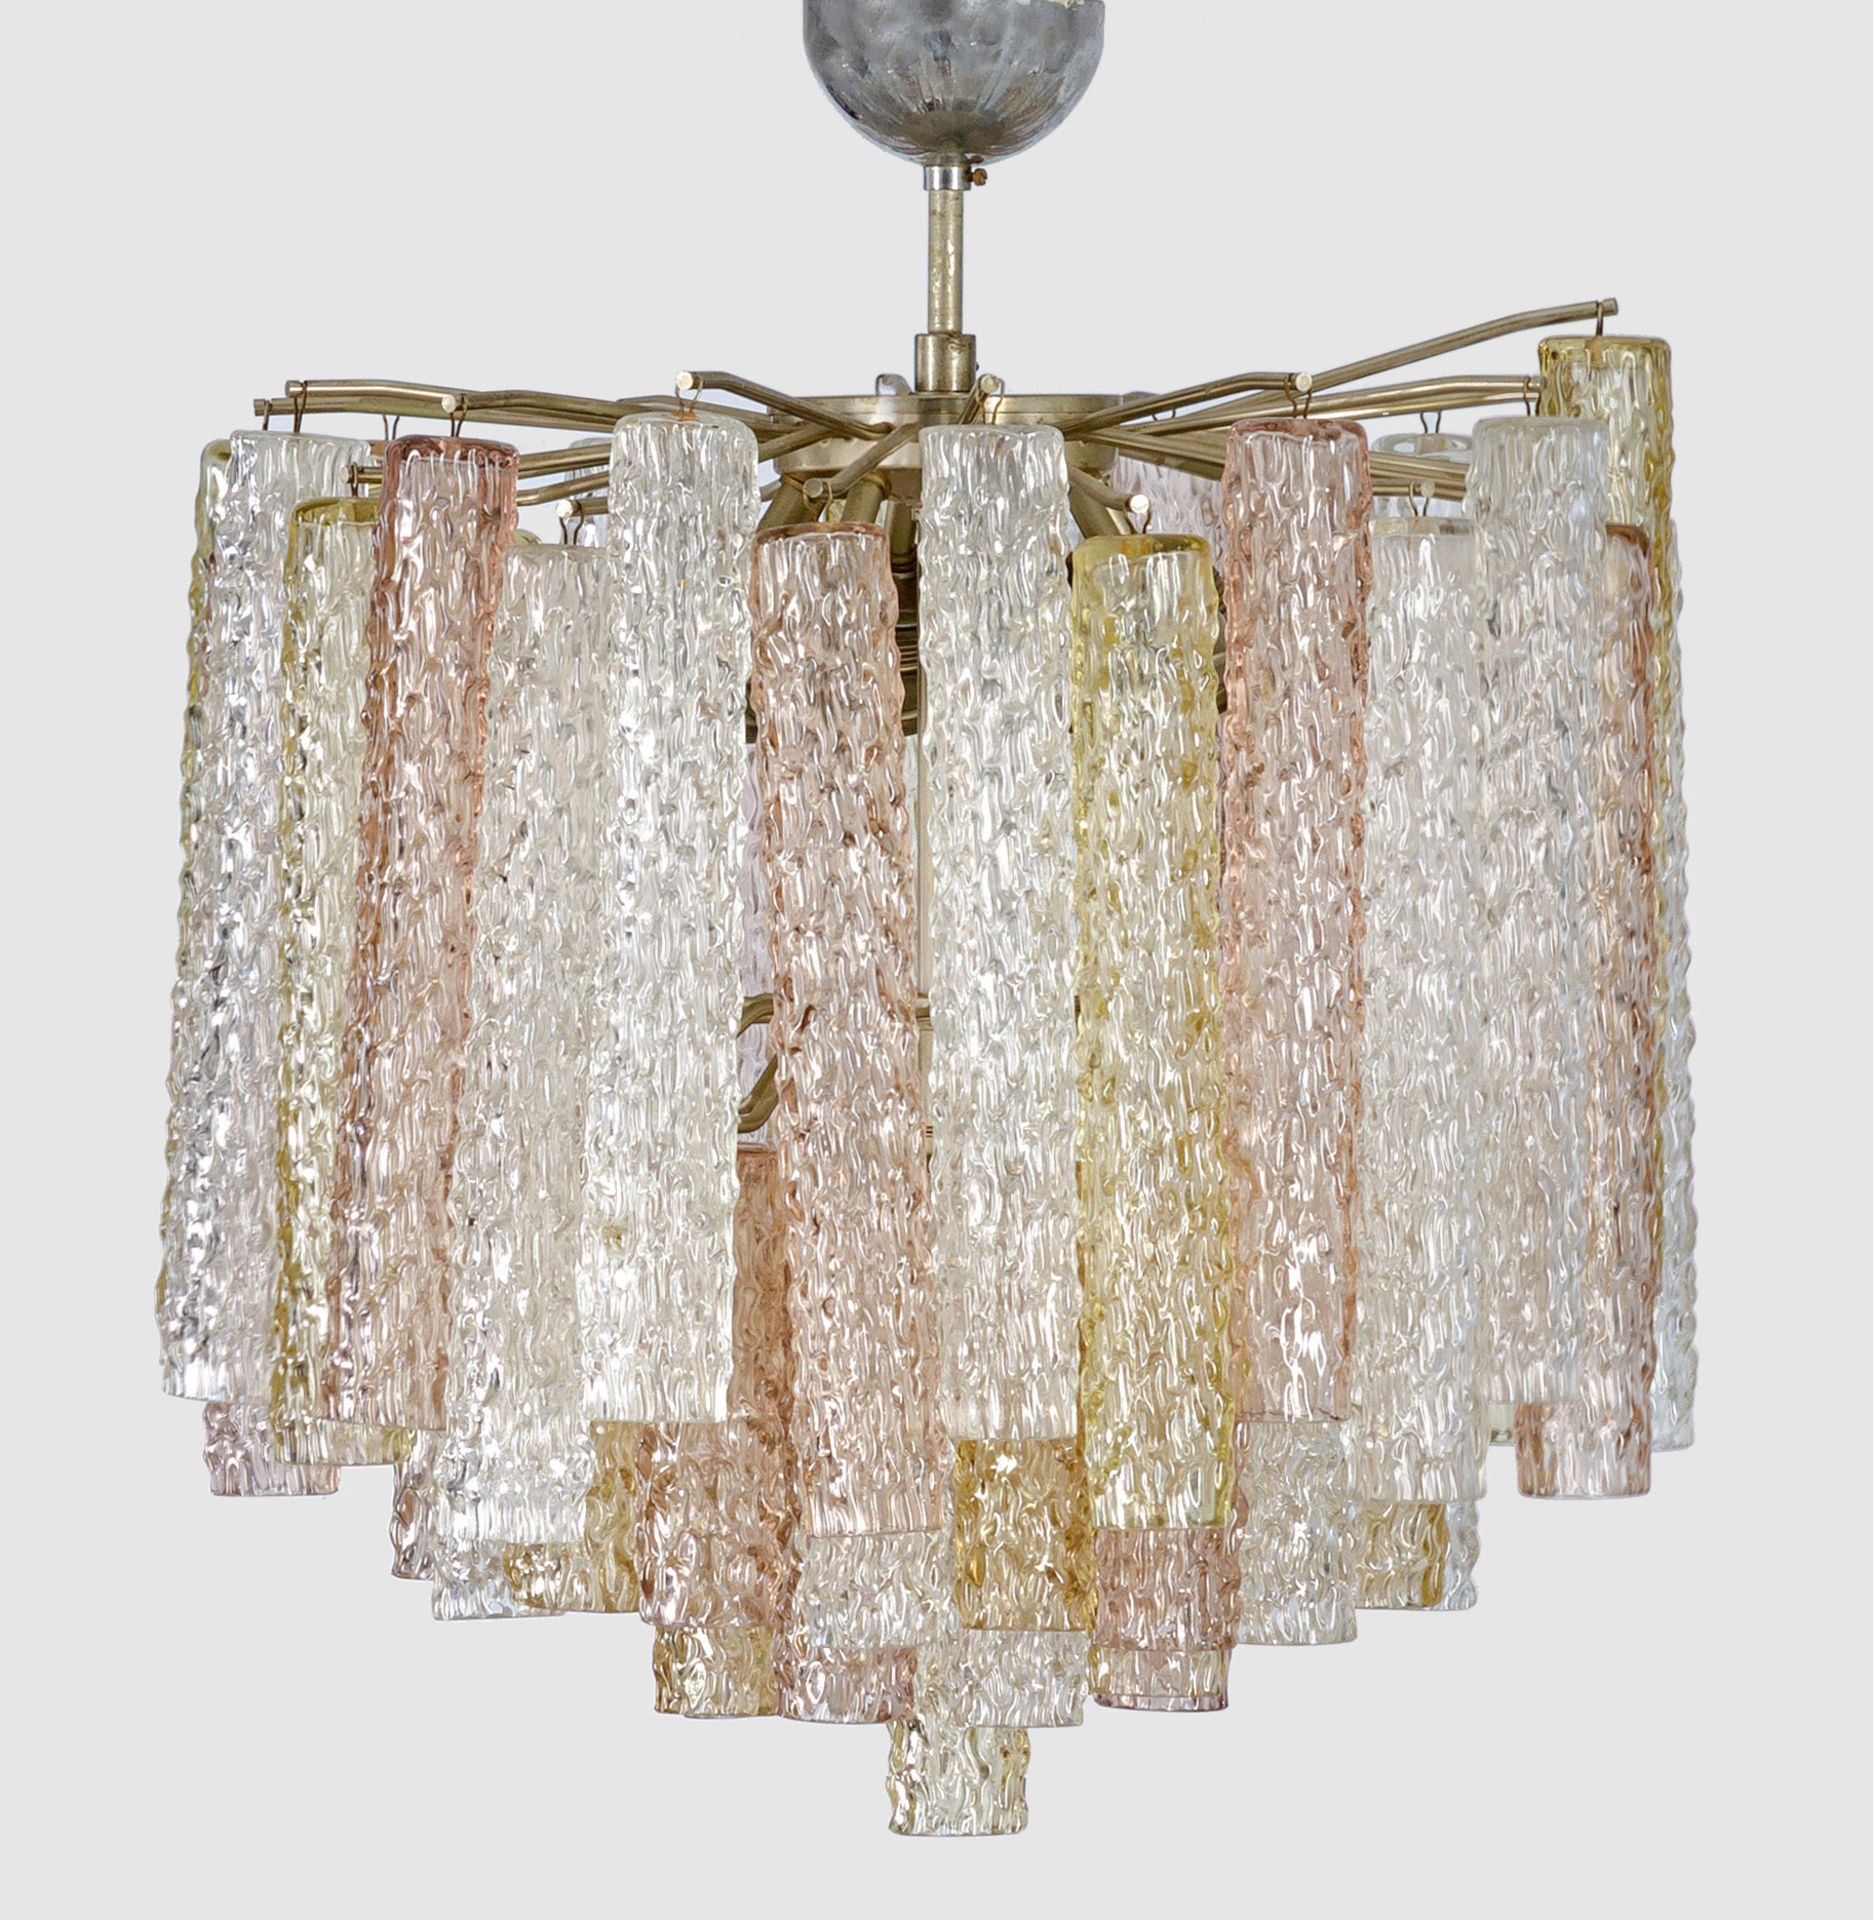 Designer-Deckenlampe "Tronchi-Lampa" von Toni Zuccheri